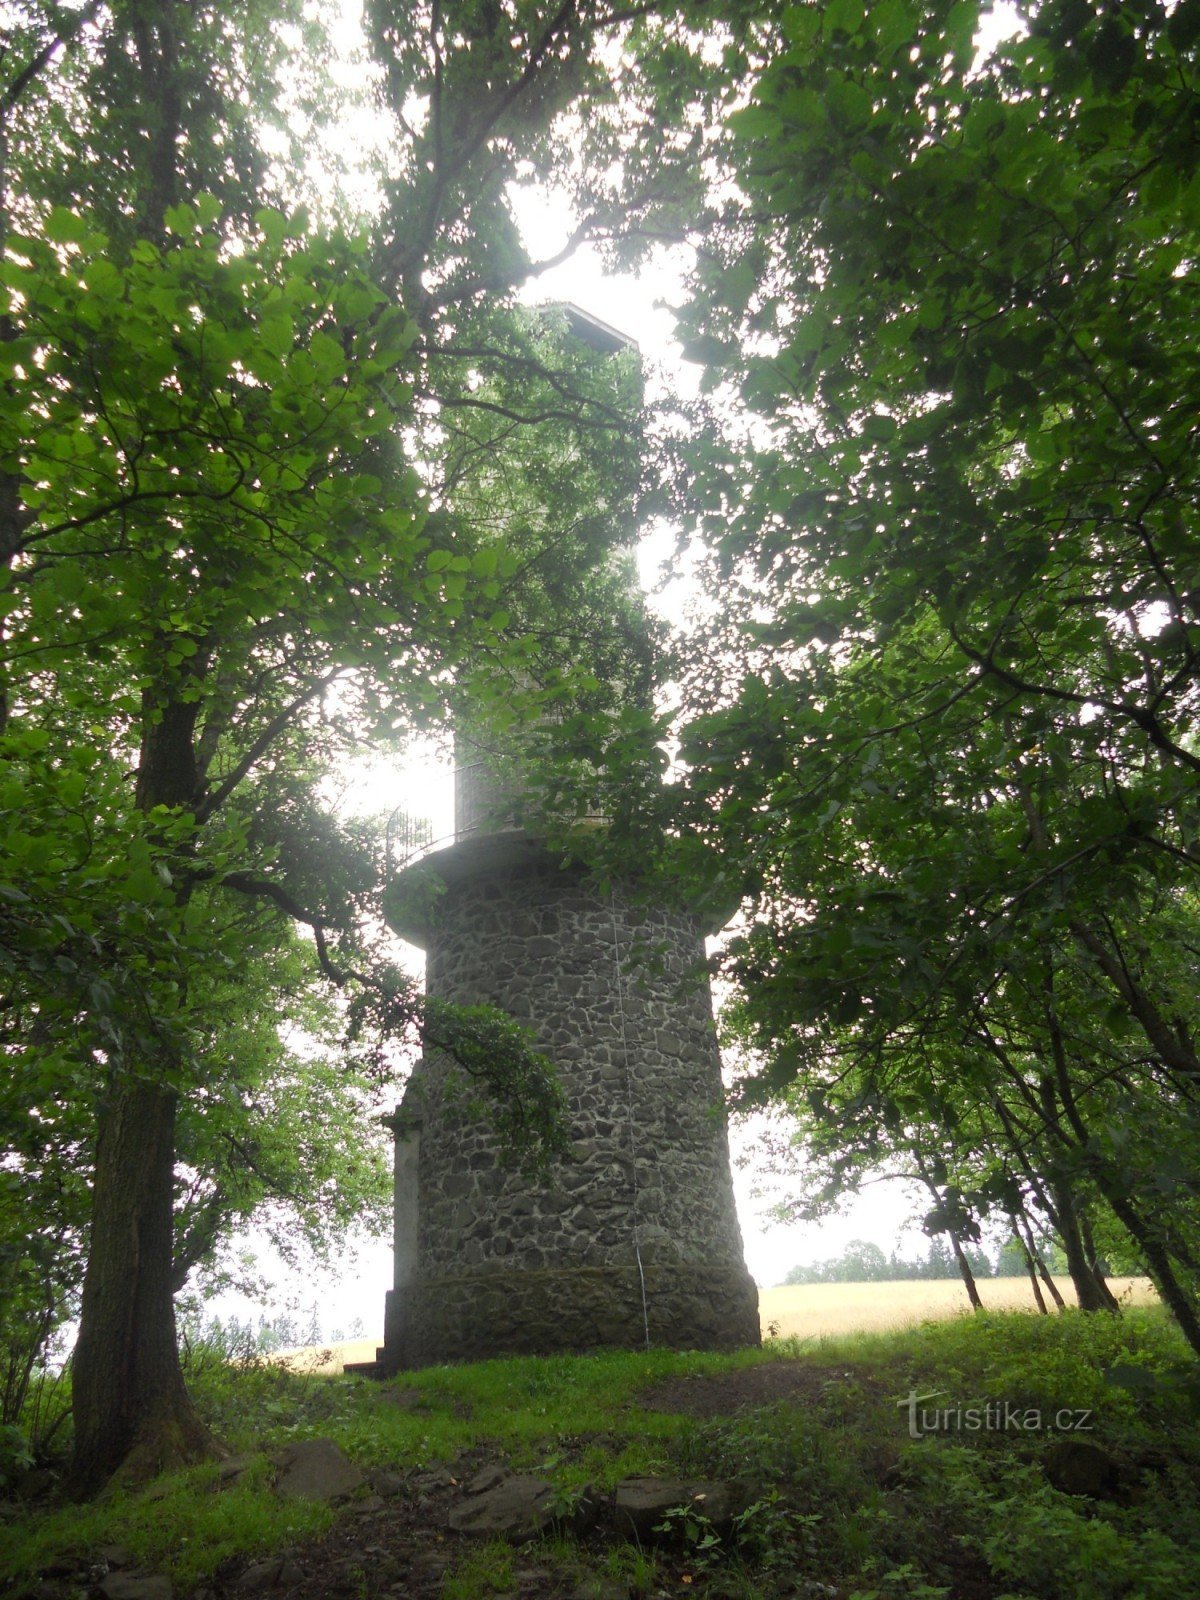 Lookout tower Velký Chlum near Děčín.